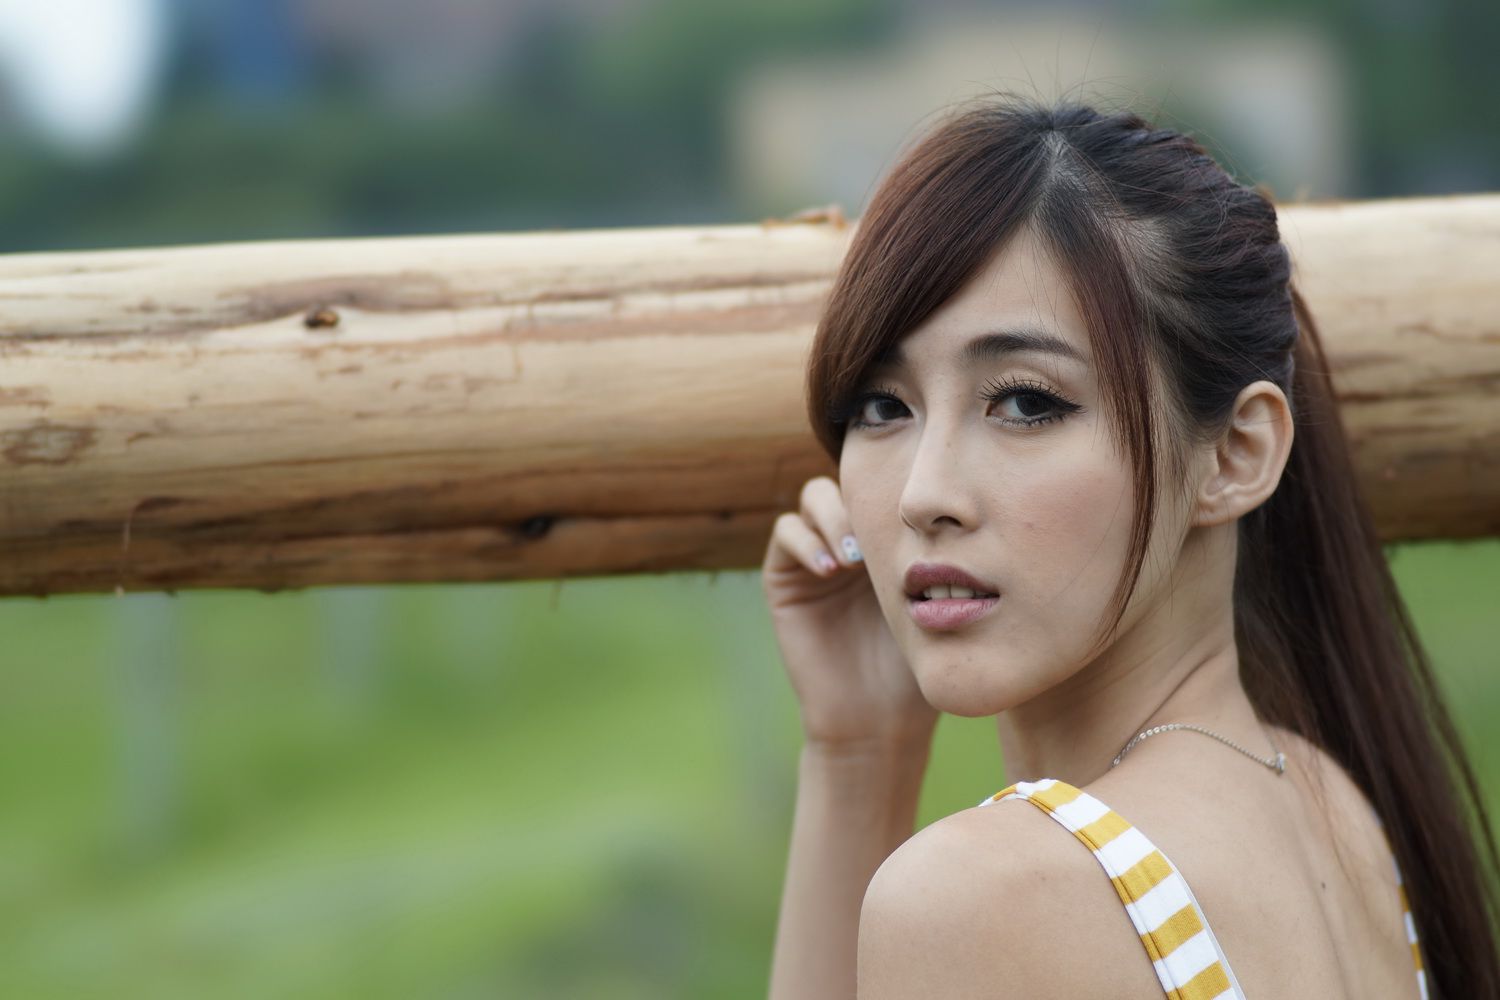 台湾美女模特Kila - 时尚优雅街拍高清图片